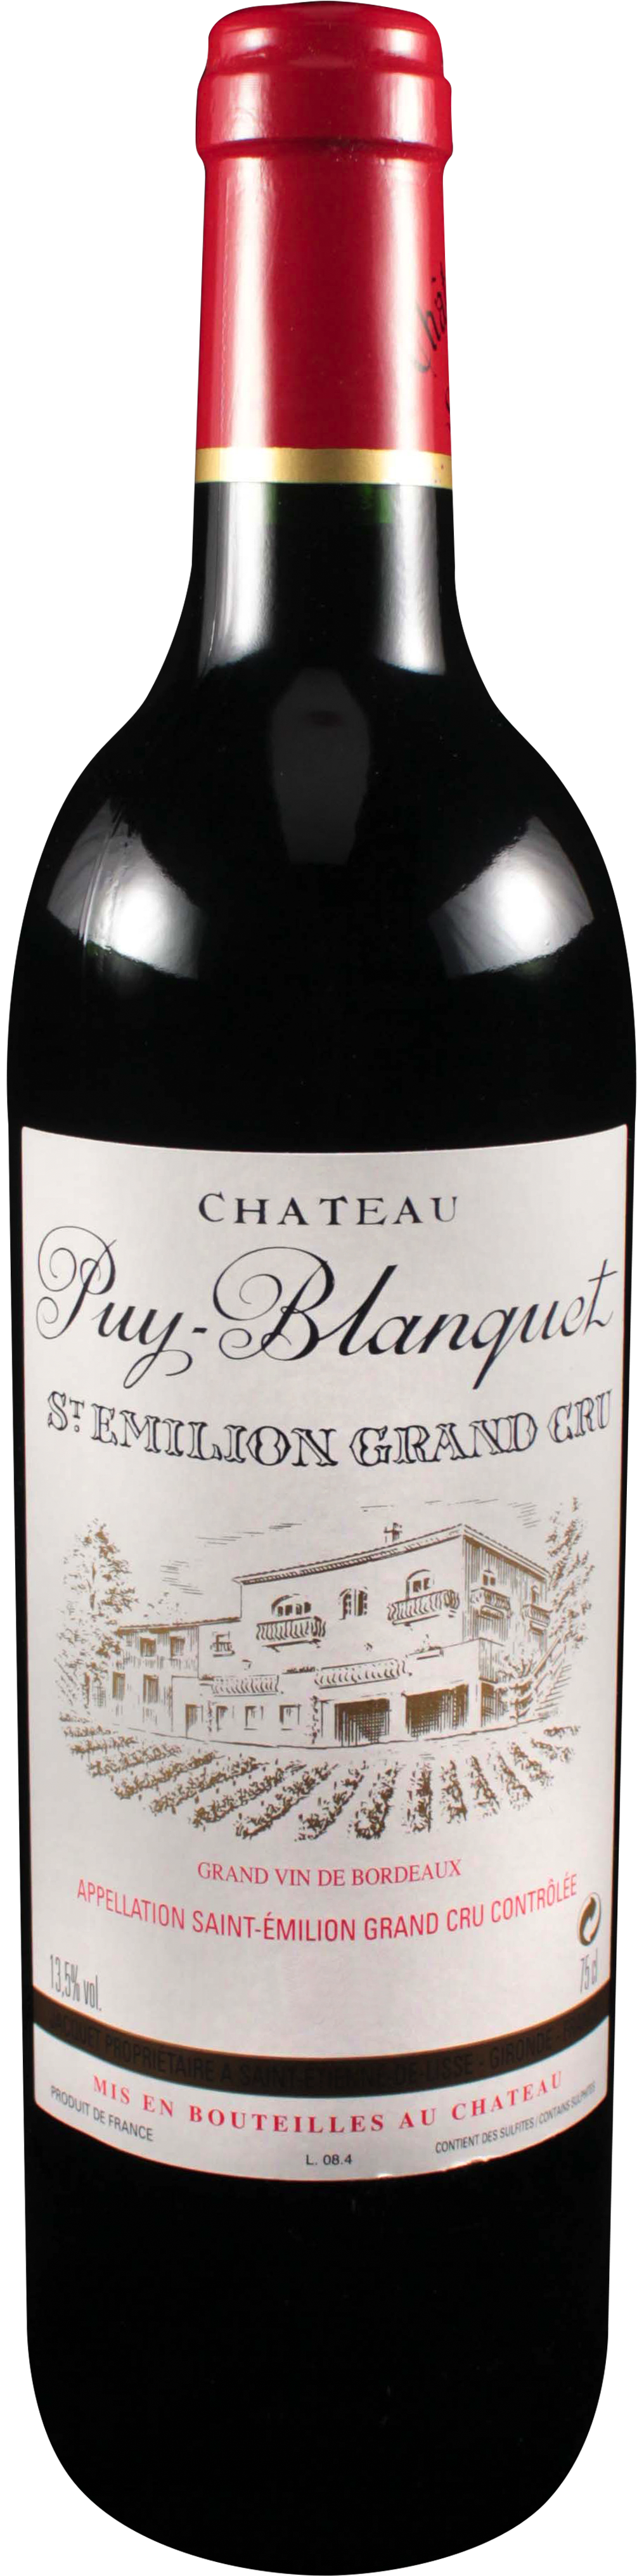 Bottle shot of 2009 Château Puy Blanquet, St Emilion